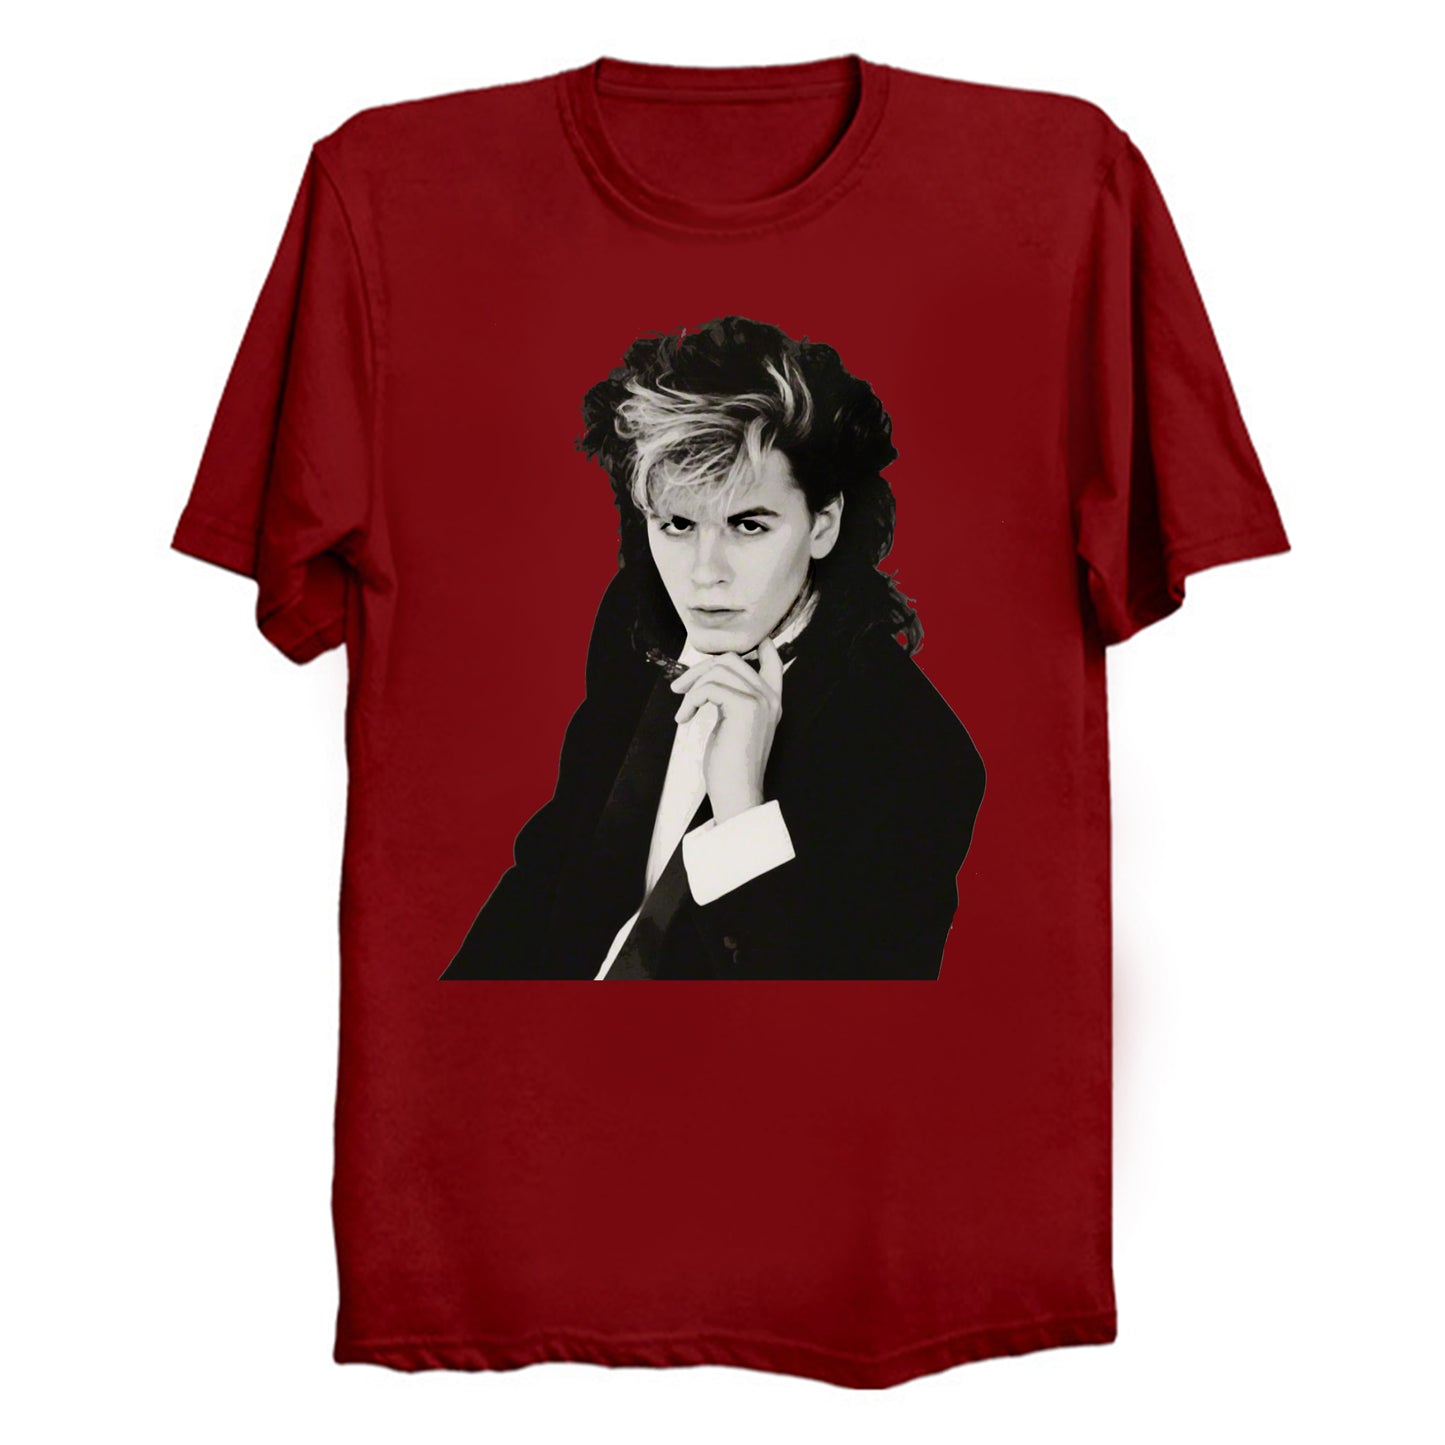 Sex God John Taylor out of Duran Duran T-Shirt (various colors)